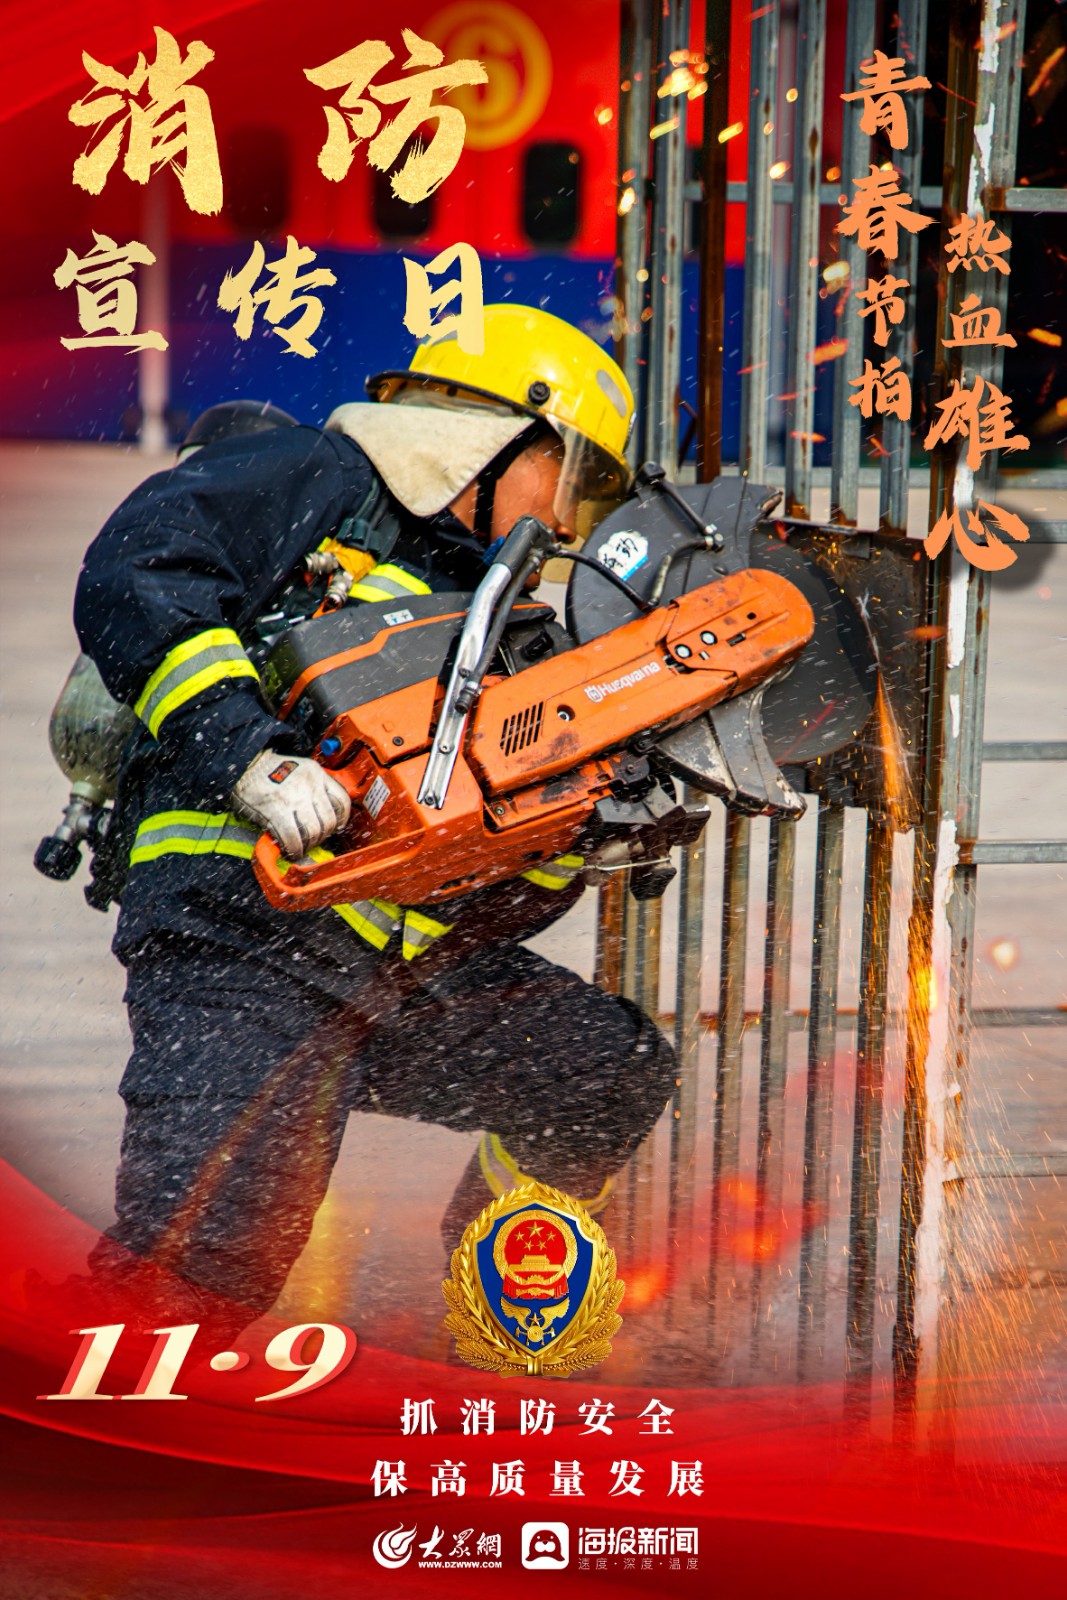 119消防宣传日图片大全图片